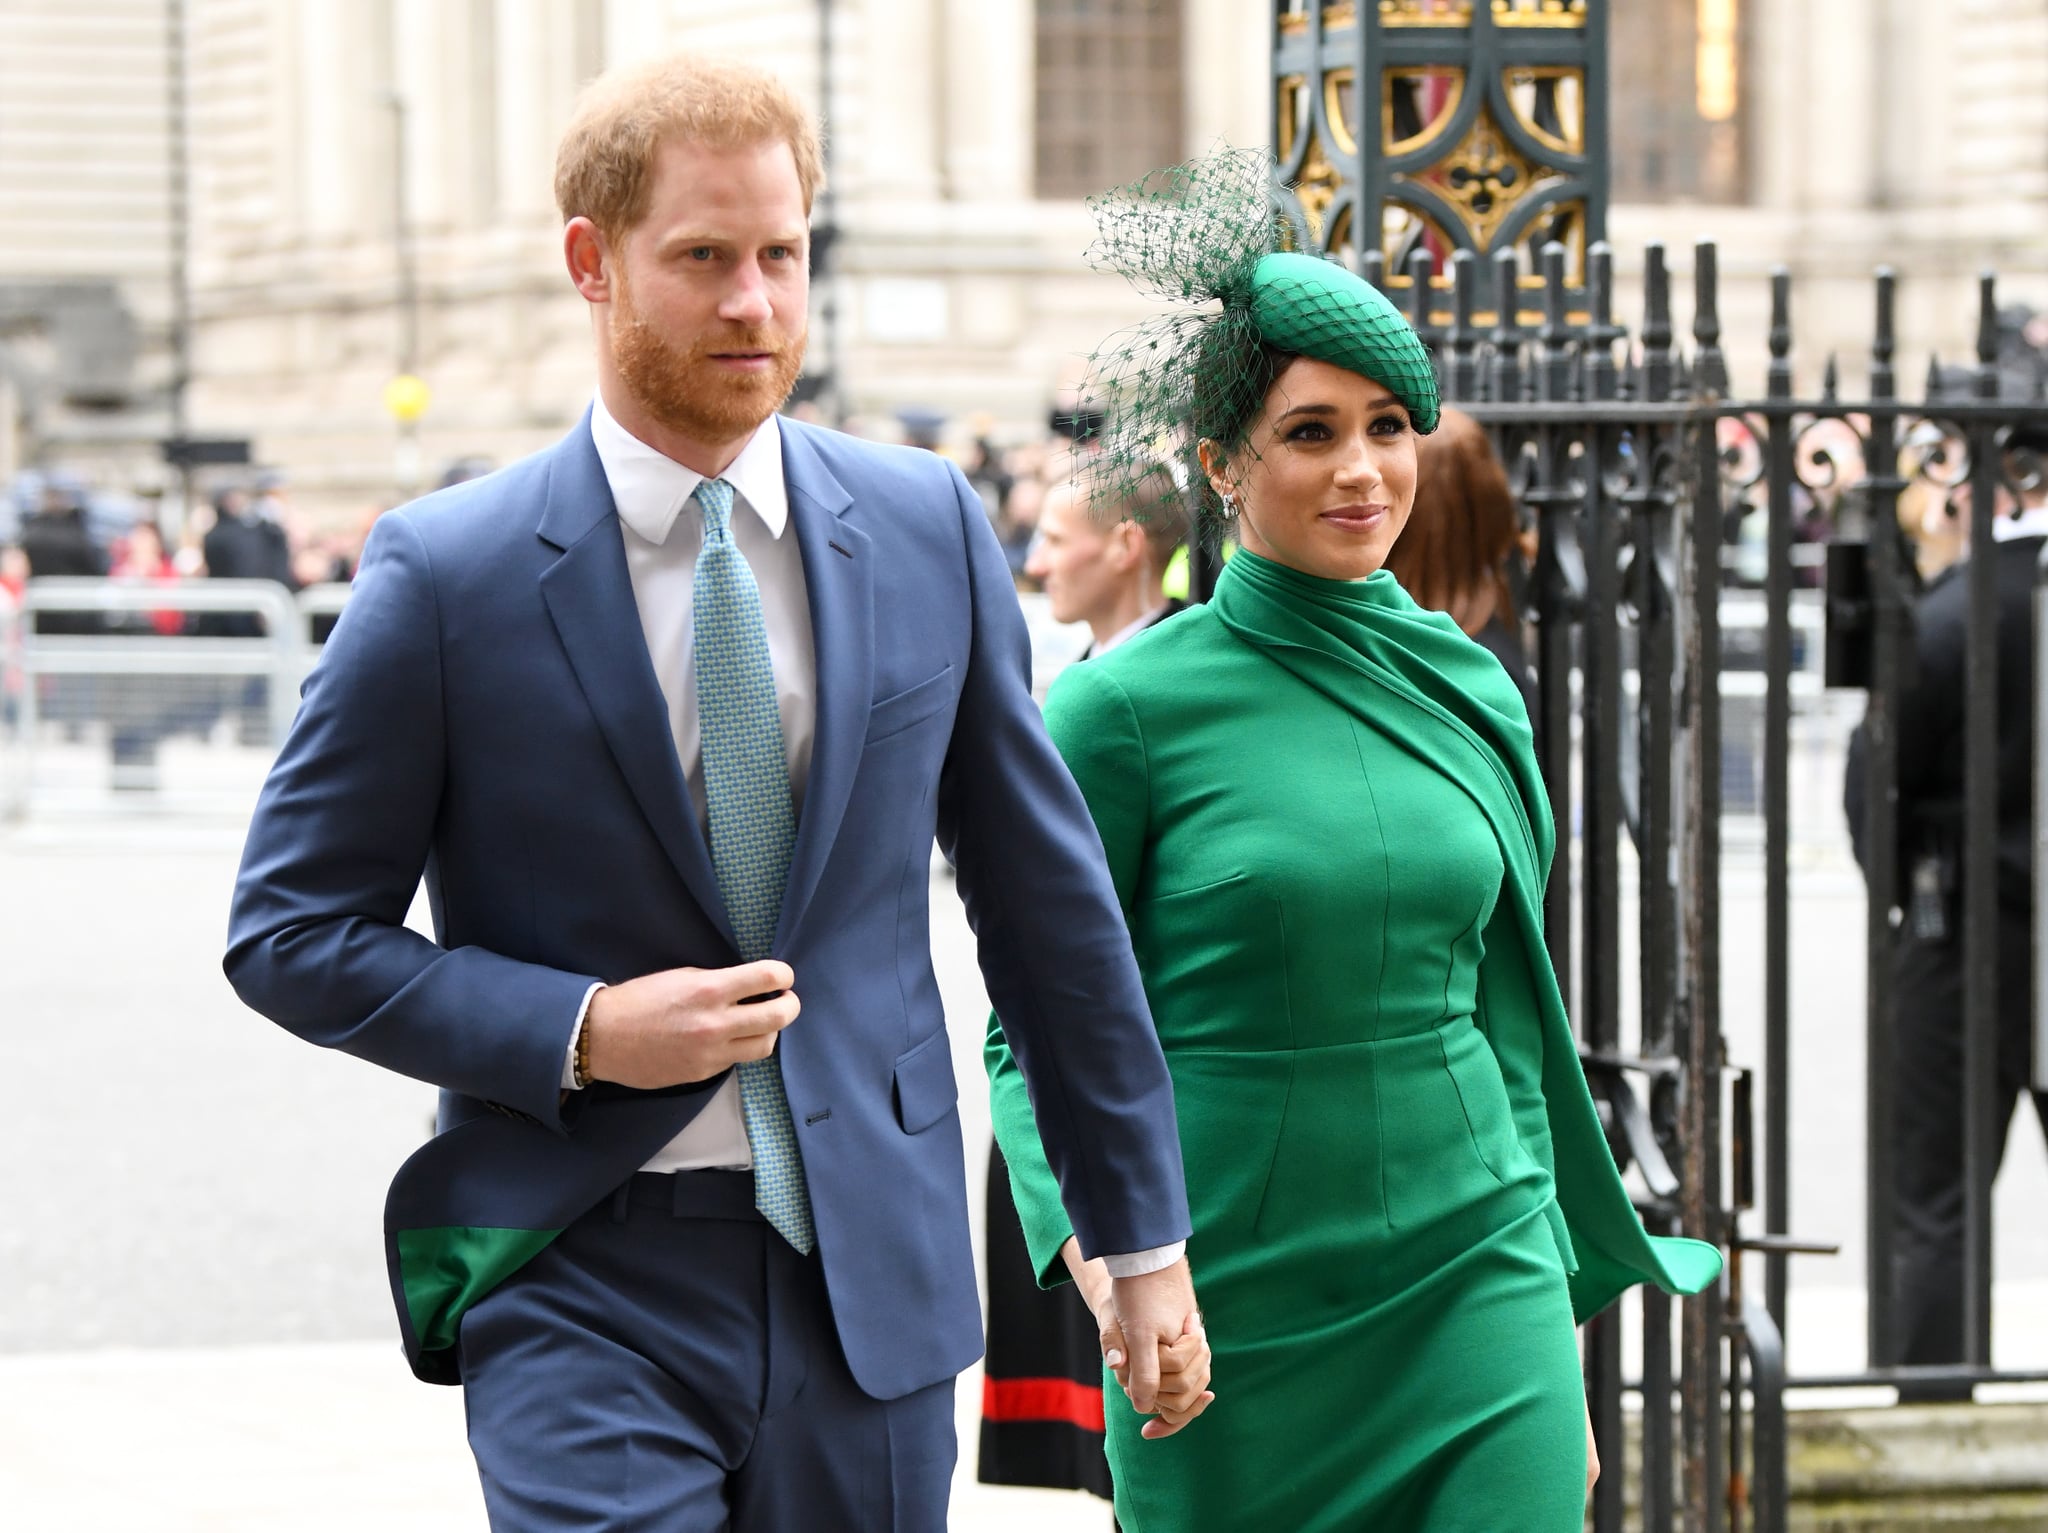 لندن ، انگلستان - 09 مارس: شاهزاده هری ، دوک ساسکس و مگان ، دوشس ساسکس در 09 مارس 2020 در لندن ، انگلیس در مراسم روز مشترک المنافع 2020 در ابی وست مینستر شرکت کردند.  (عکس از Karwai Tang / WireImage)